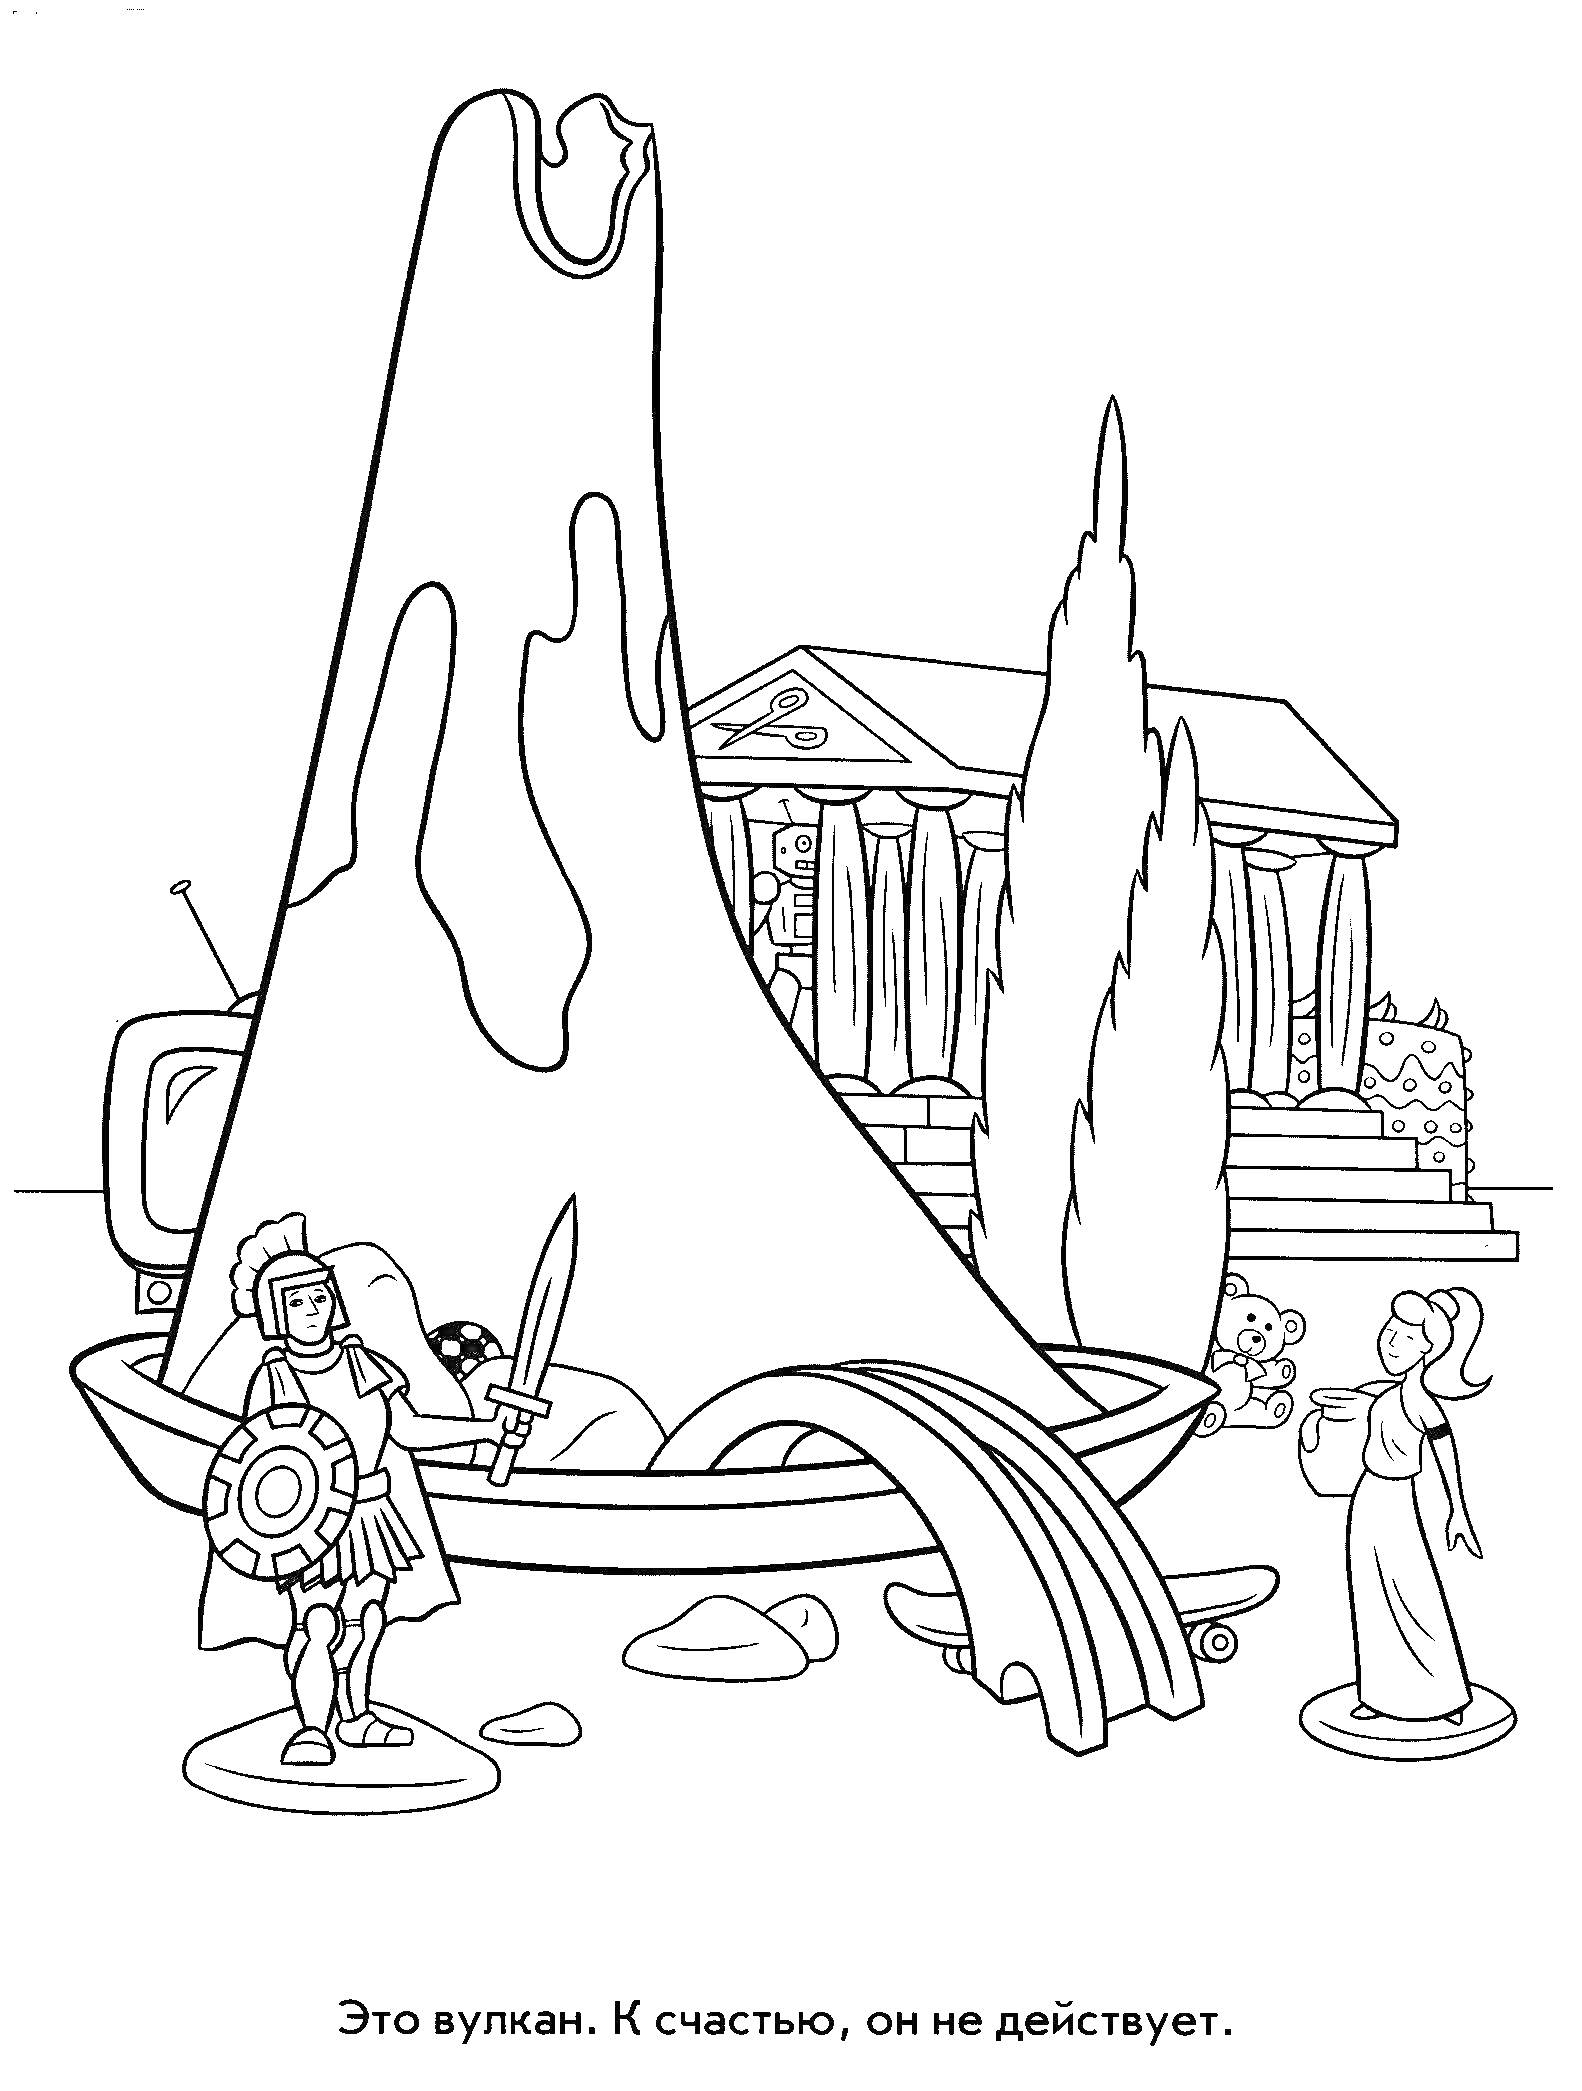 Вулкан, Архитектура в стиле древней Греции, Рыцарь с мечом и щитом, Две статуи людей, Автомобиль